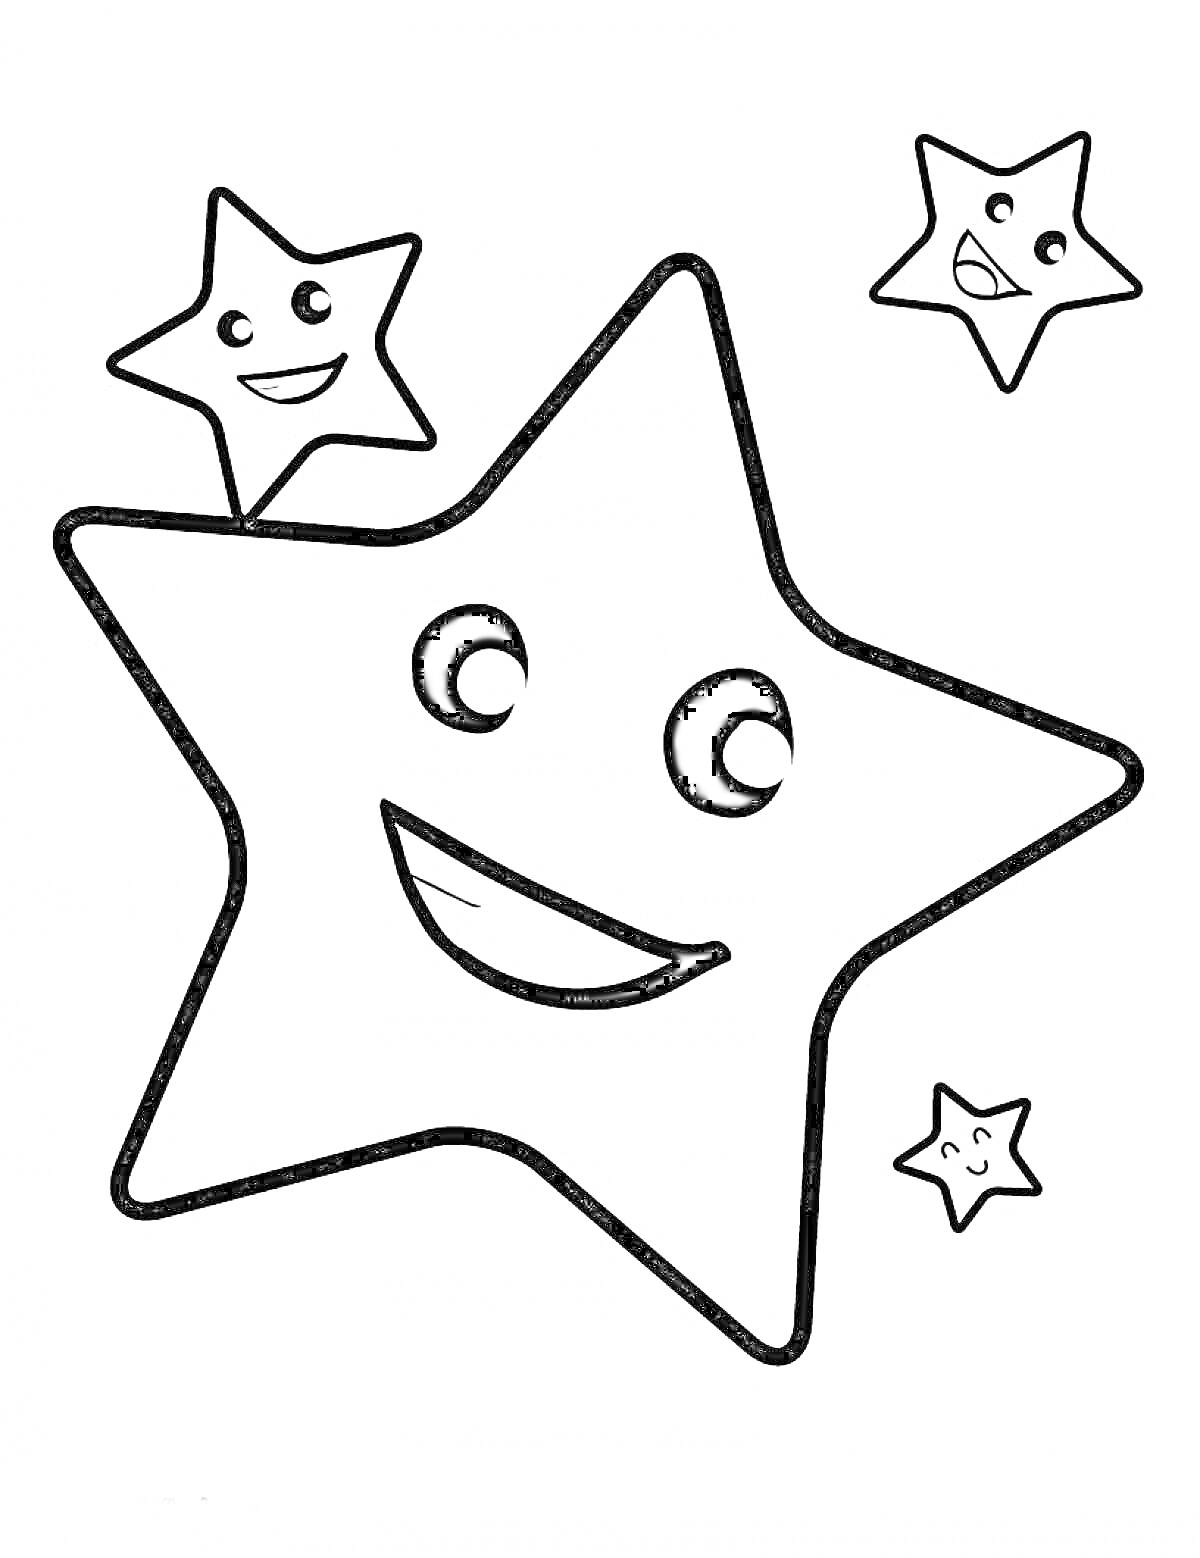 Большая улыбающаяся звезда с двумя спутниками-звездами